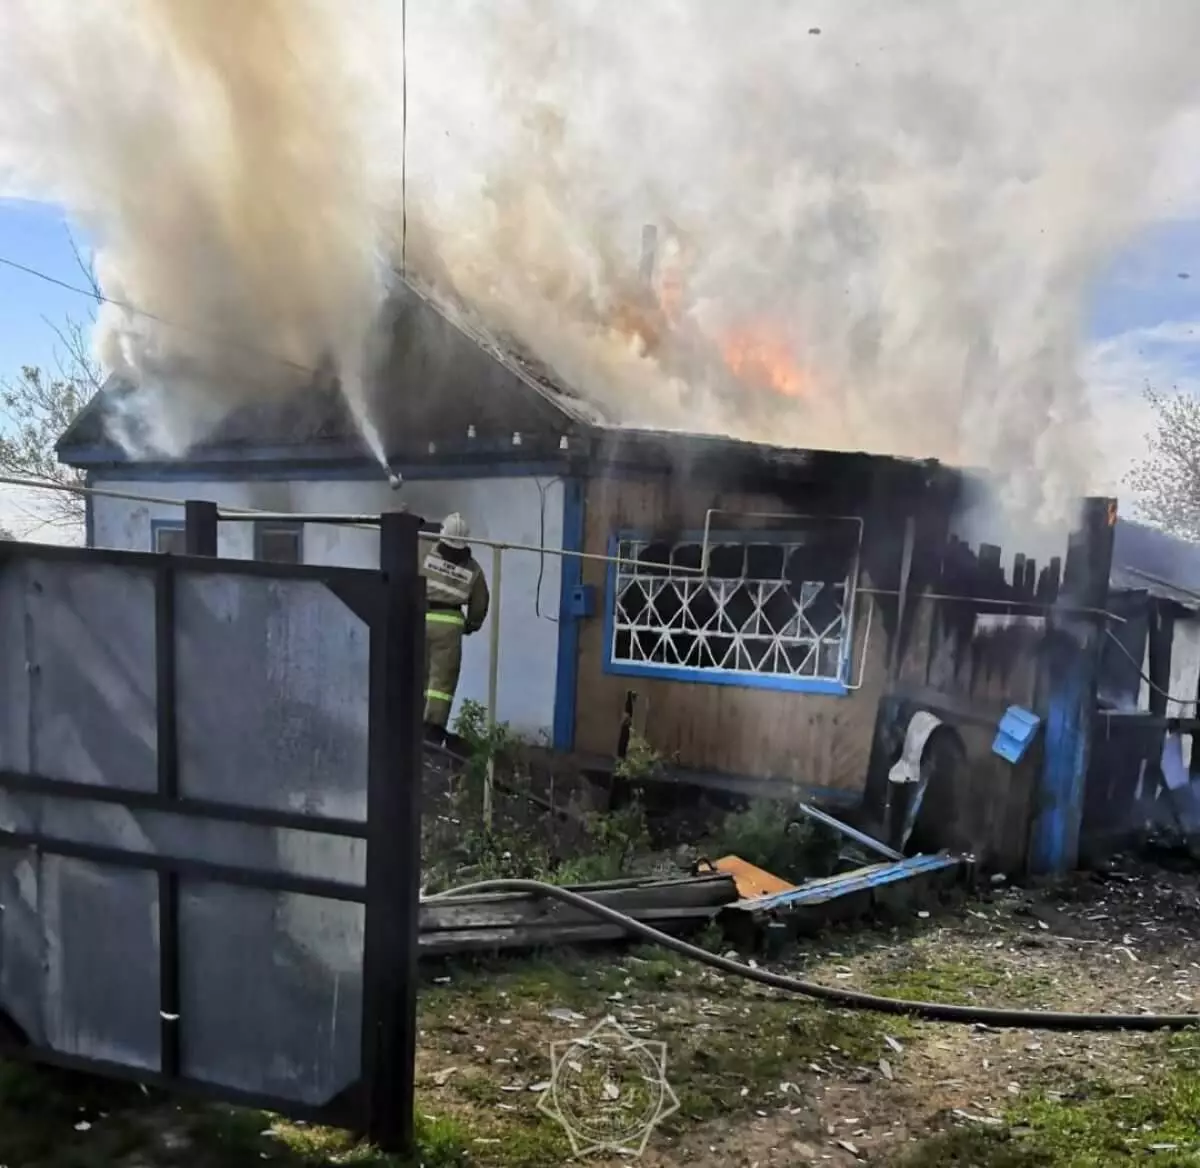 Частный жилой дом большой площади горел в Костанайской области